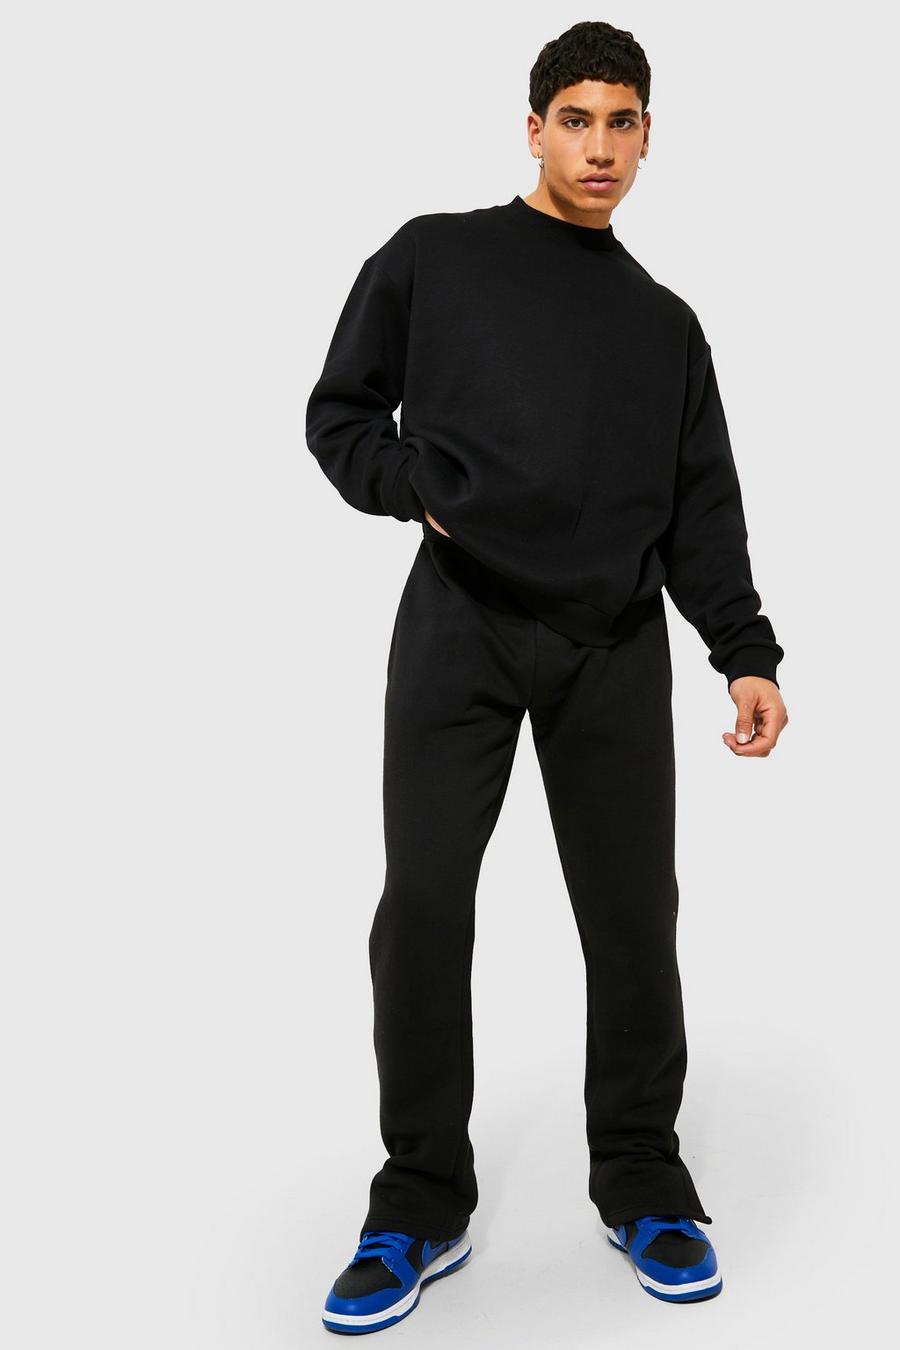 Black Oversize träningsoverall med sweatshirt och hög halsmudd